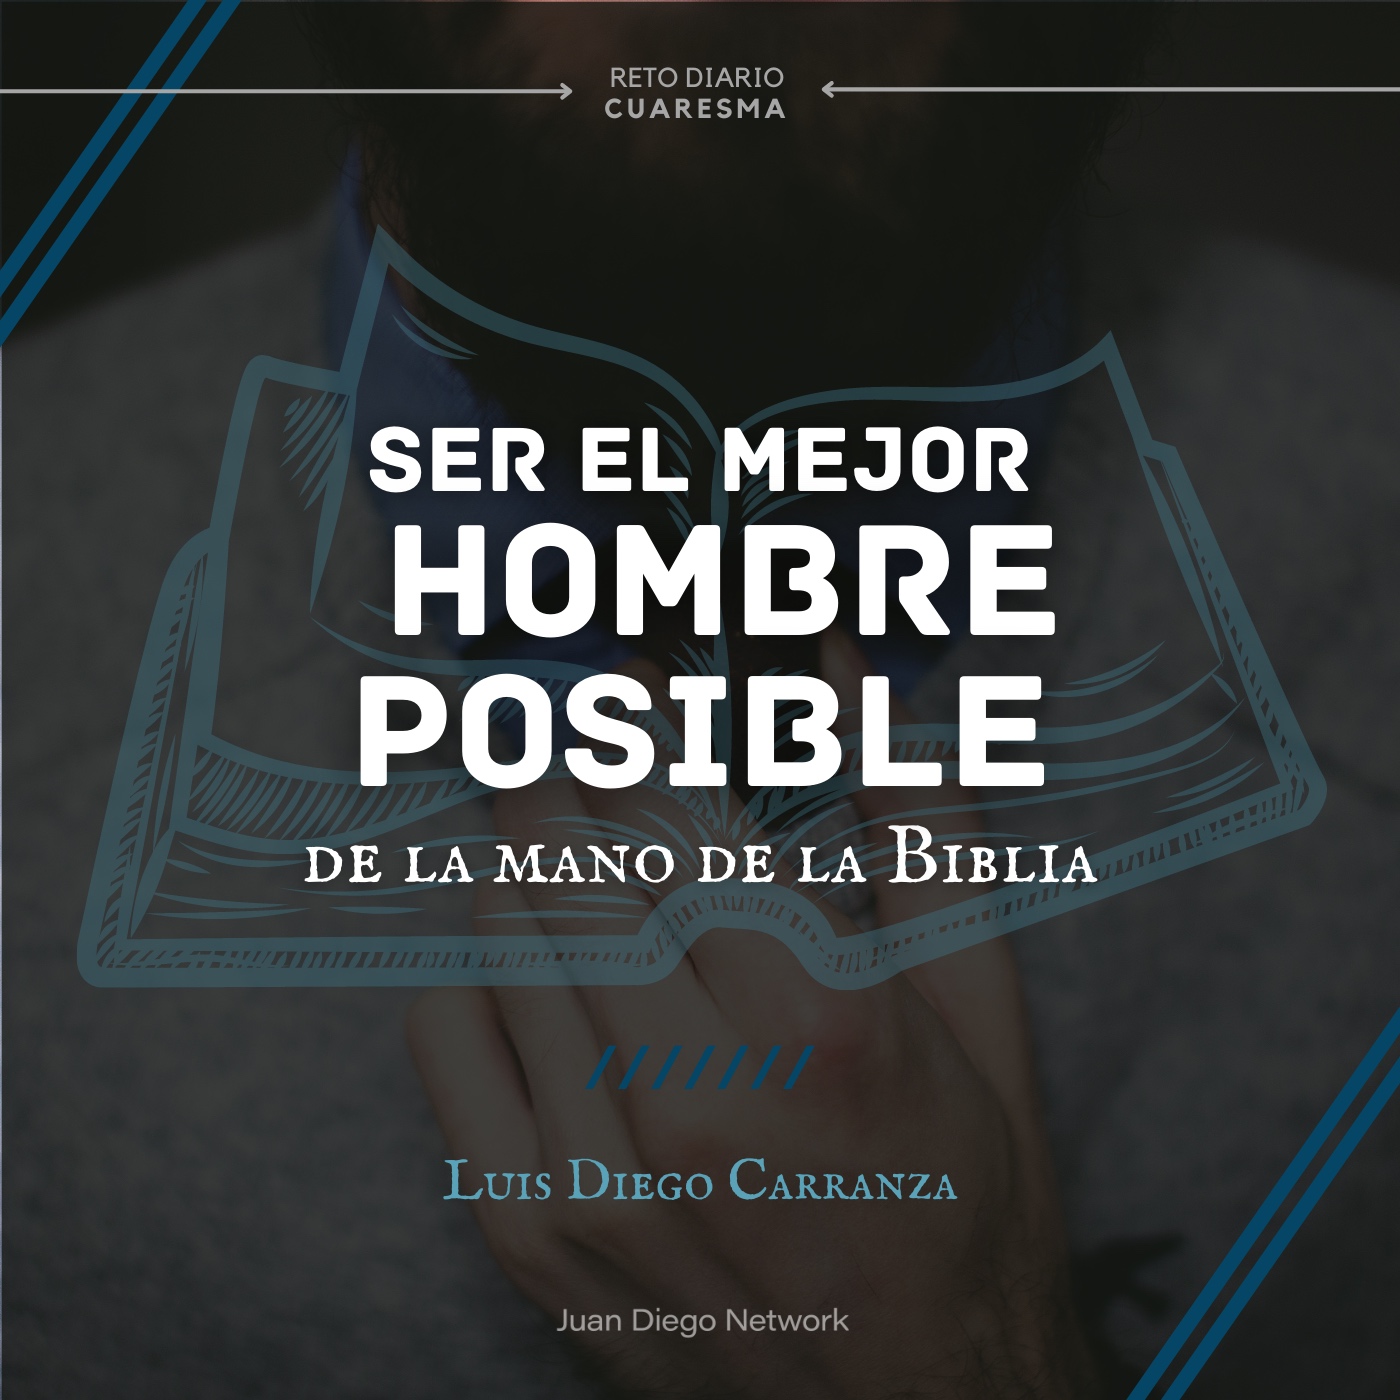 Artwork for podcast RETO: Ser el mejor hombre de la mano de la Biblia durante Cuaresma con Luis Diego Carranza